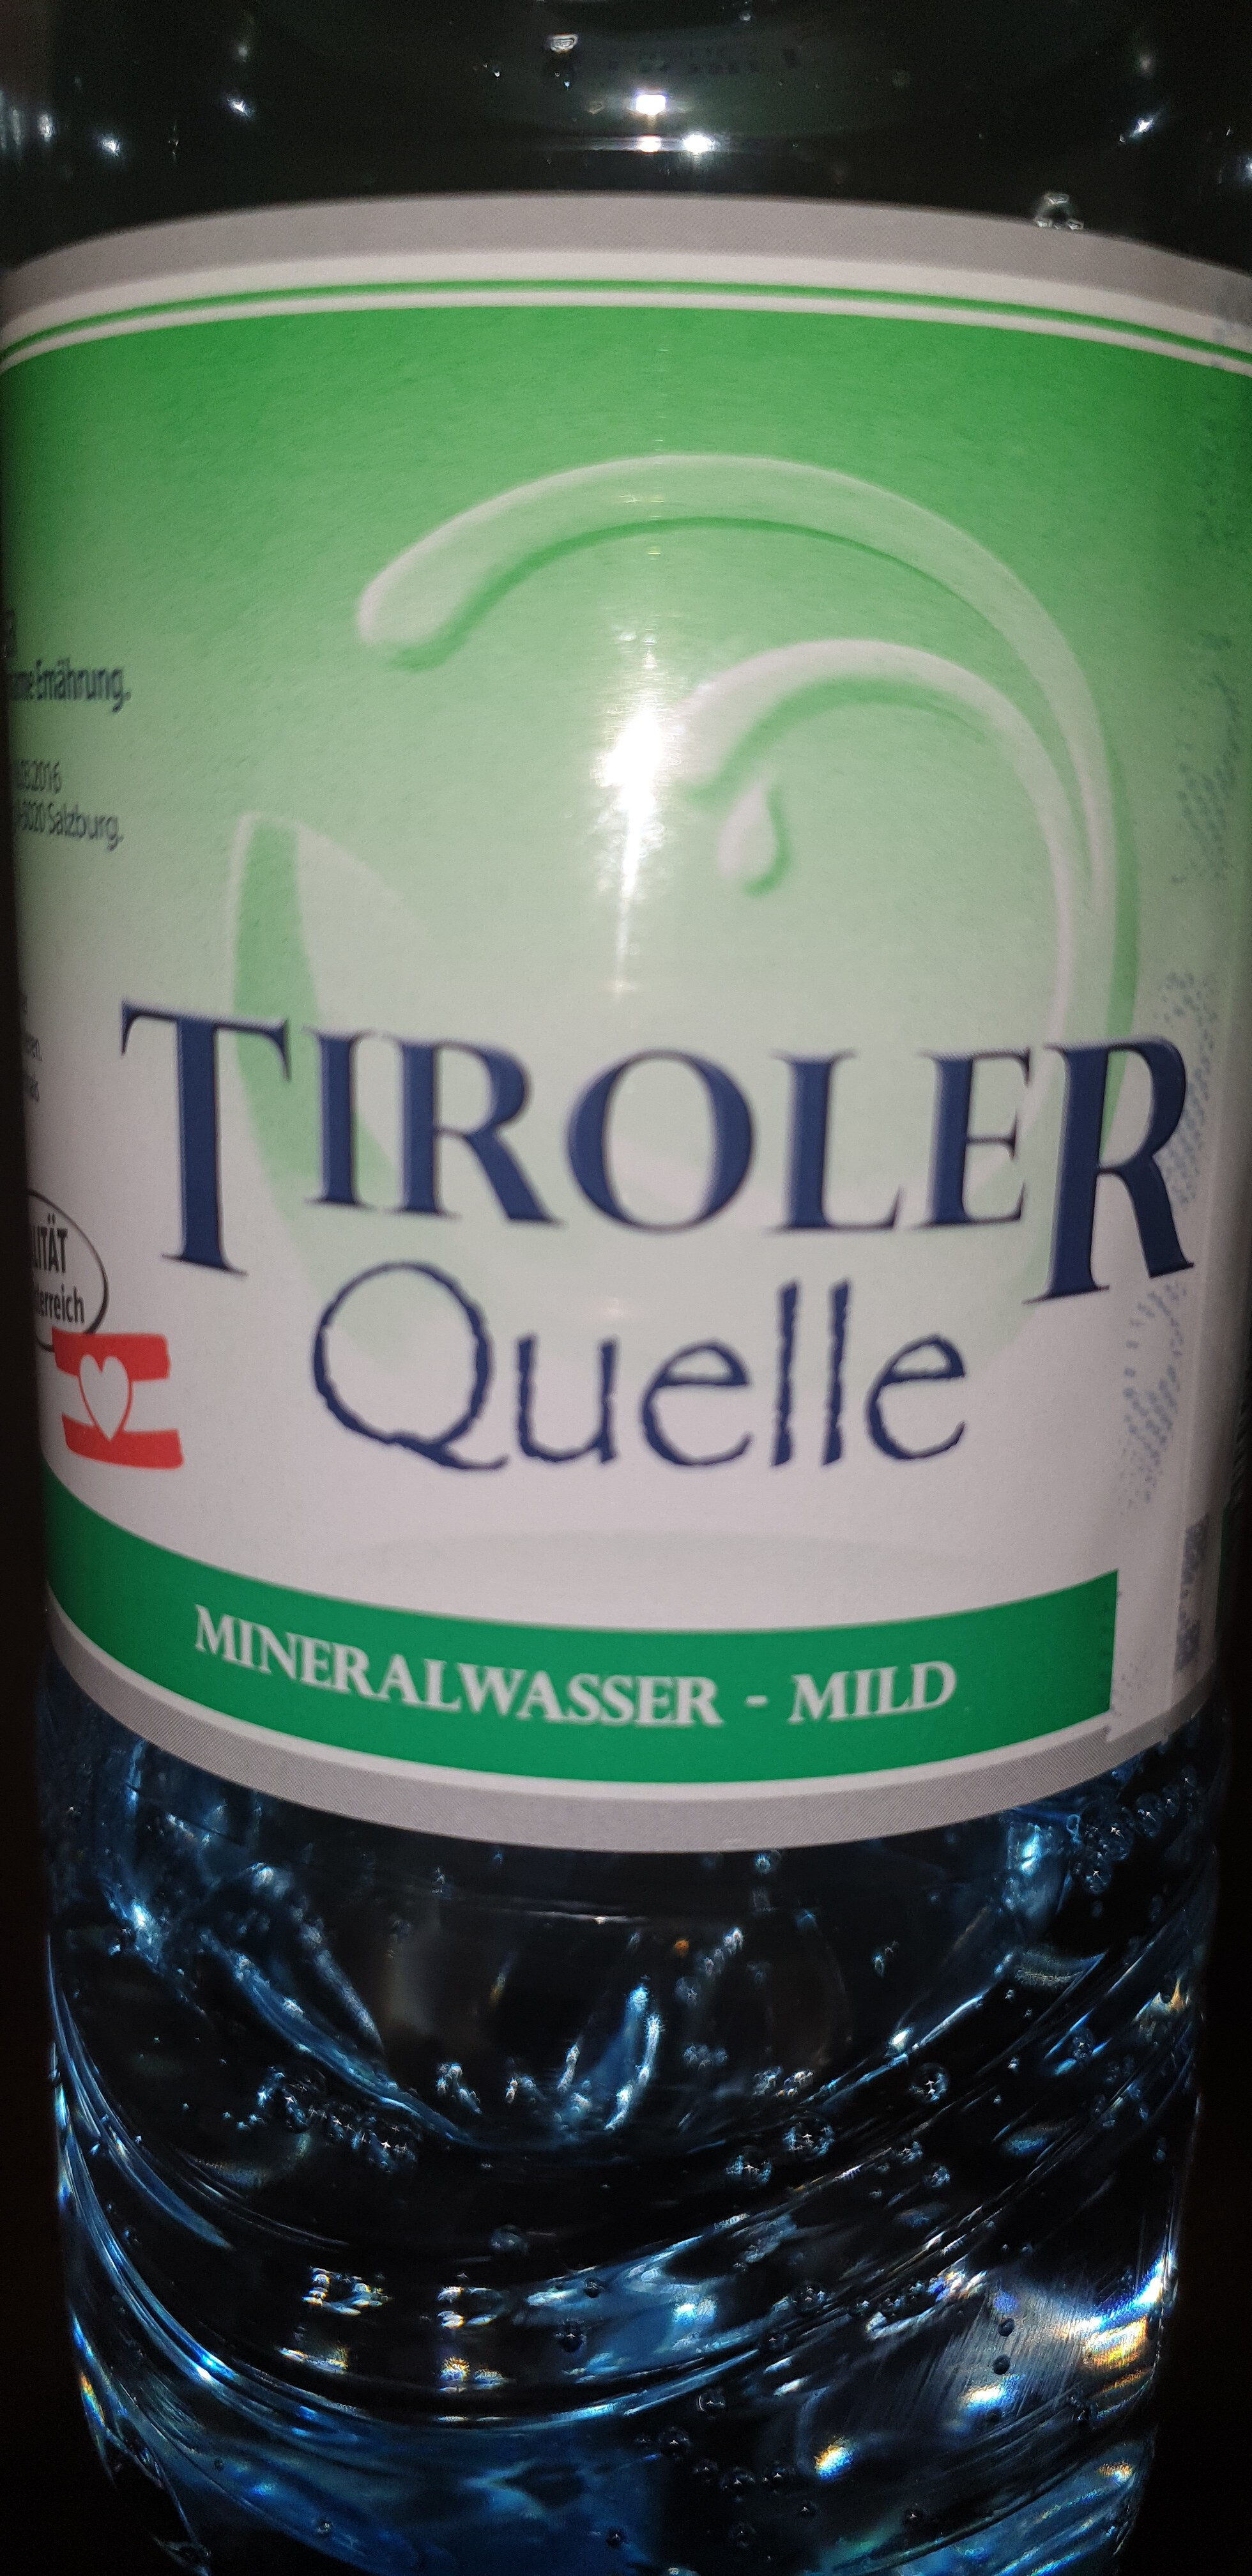 Tiroler Quelle - mild - Produkt